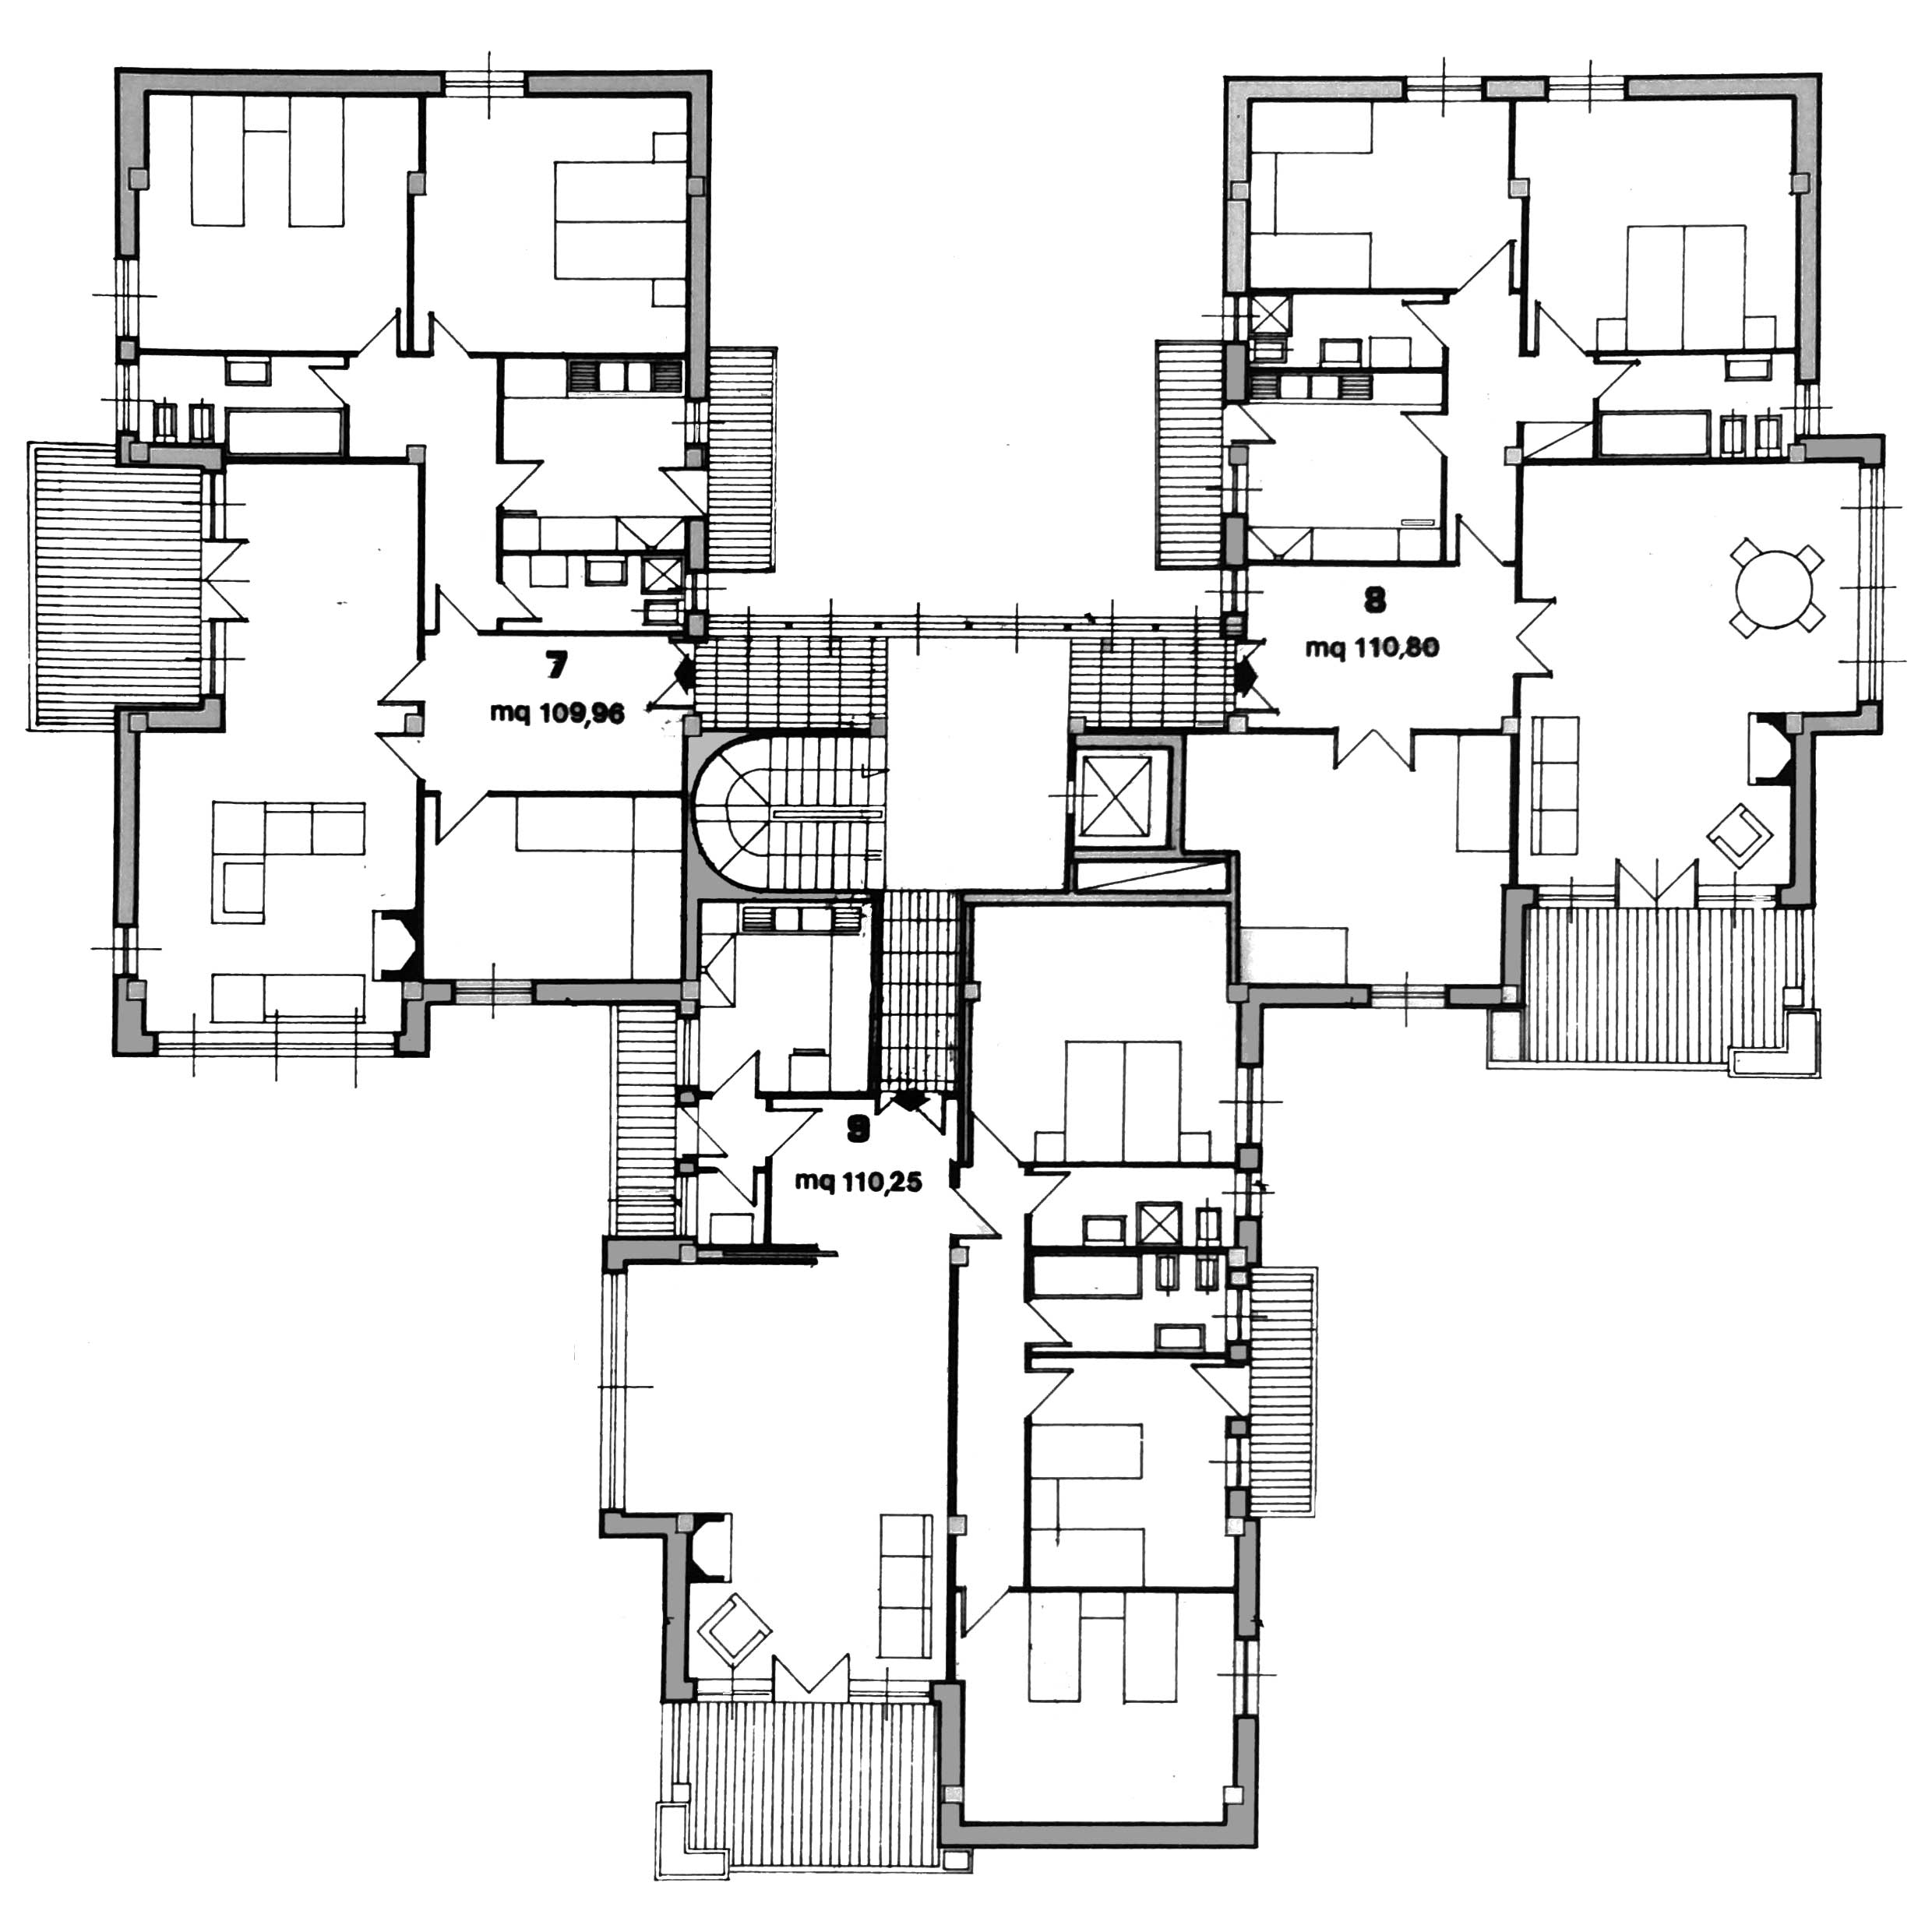 3 - Edificio residenziale per 9 alloggi nel PdZ Roma - Casal dei Pazzi; con R. De Vito - Pianta piano tipo